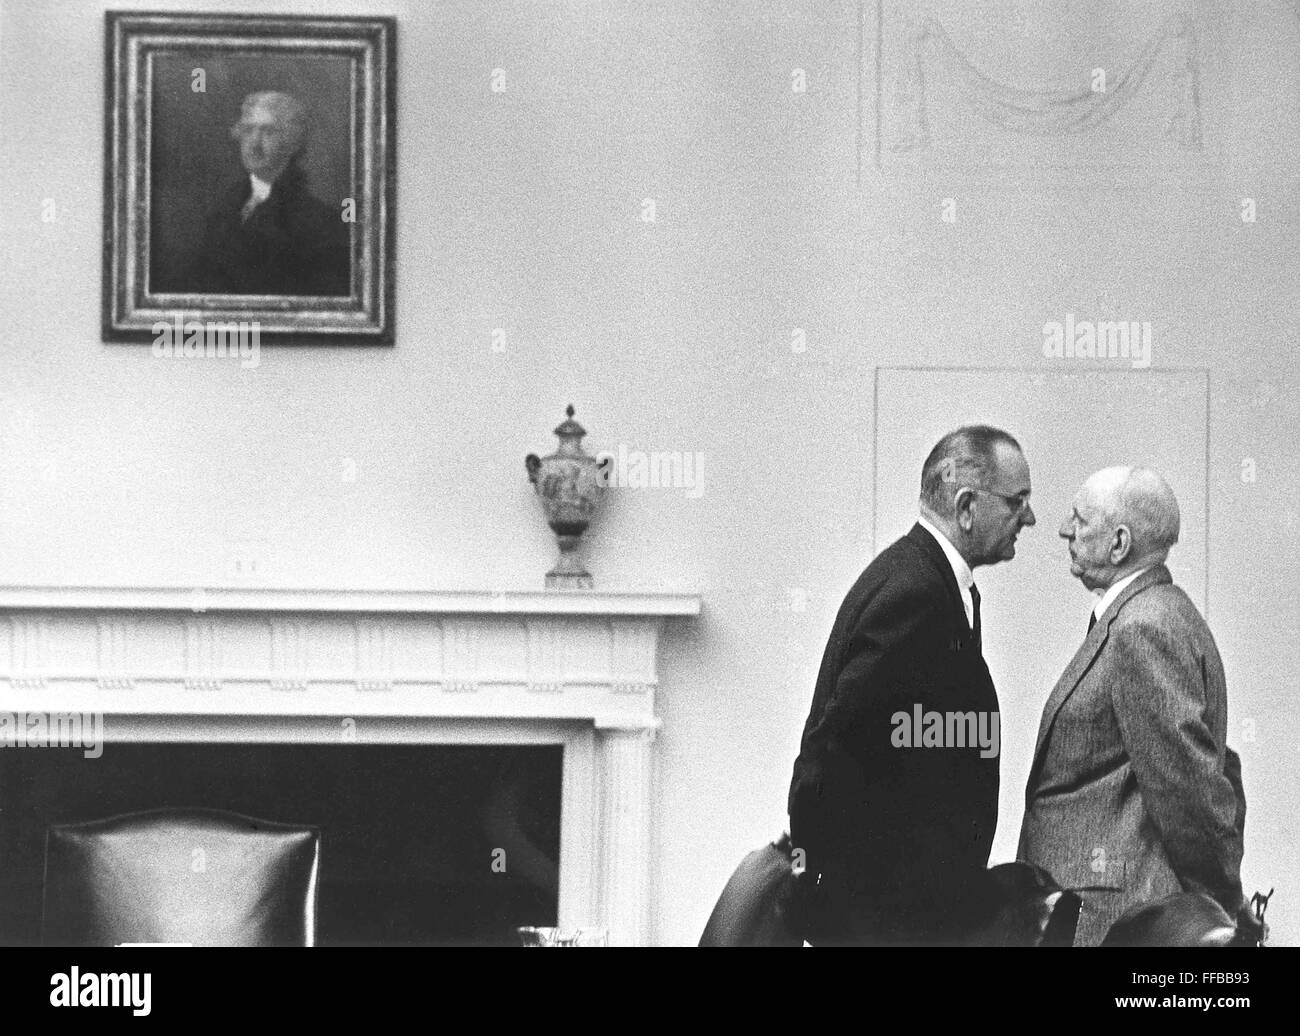 Präsident Lyndon b. Johnson mit Senator Richard Russell an das Weiße Haus, 7. Dezember 1963, Washington, DC. Weiße Haus Foto von Yoichi Okamoto (1915-1985). Stockfoto